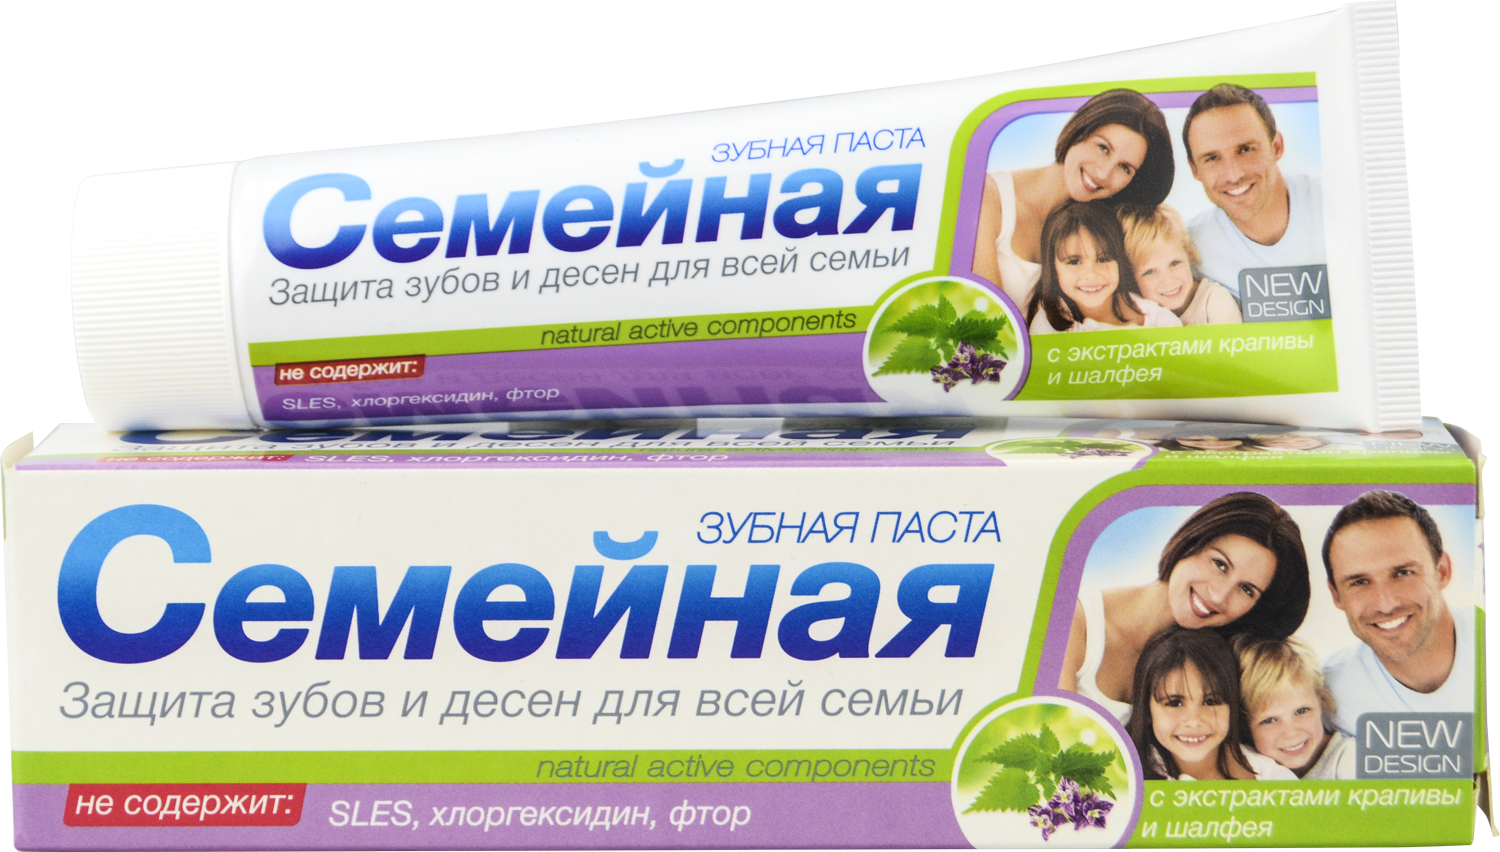 Зубная паста для всей семьи, включая детей от 7 лет "Семейная" с экстрактами крапивы и шалфея